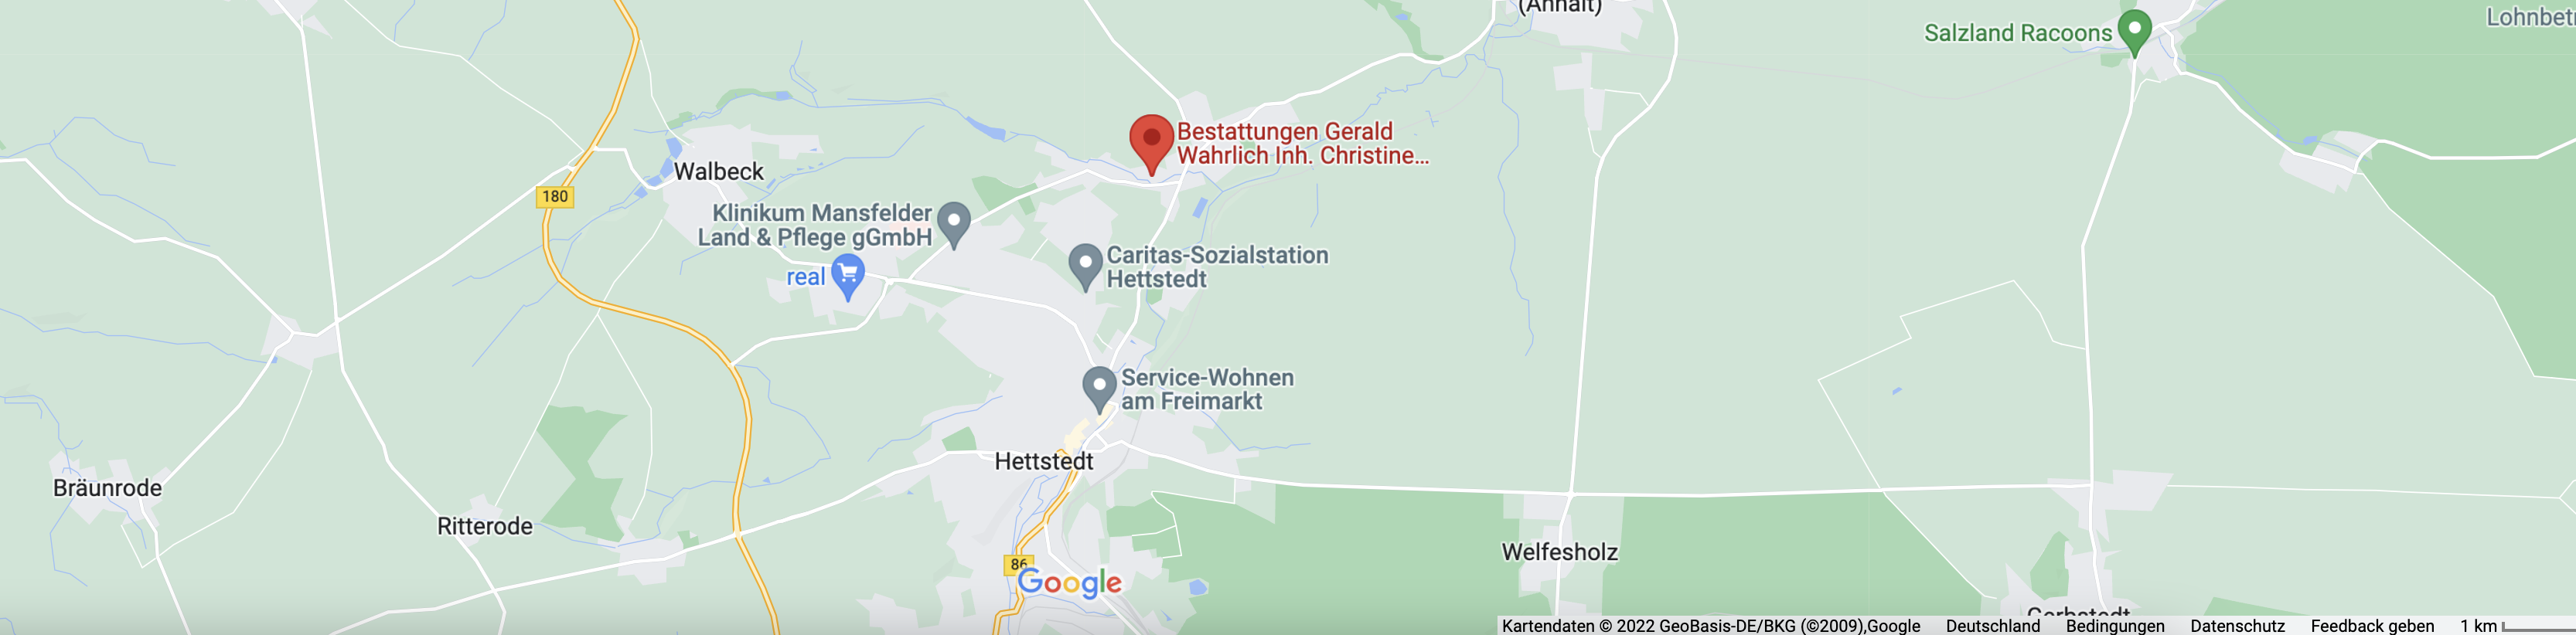 Karte_Bestattung_Wahrlich